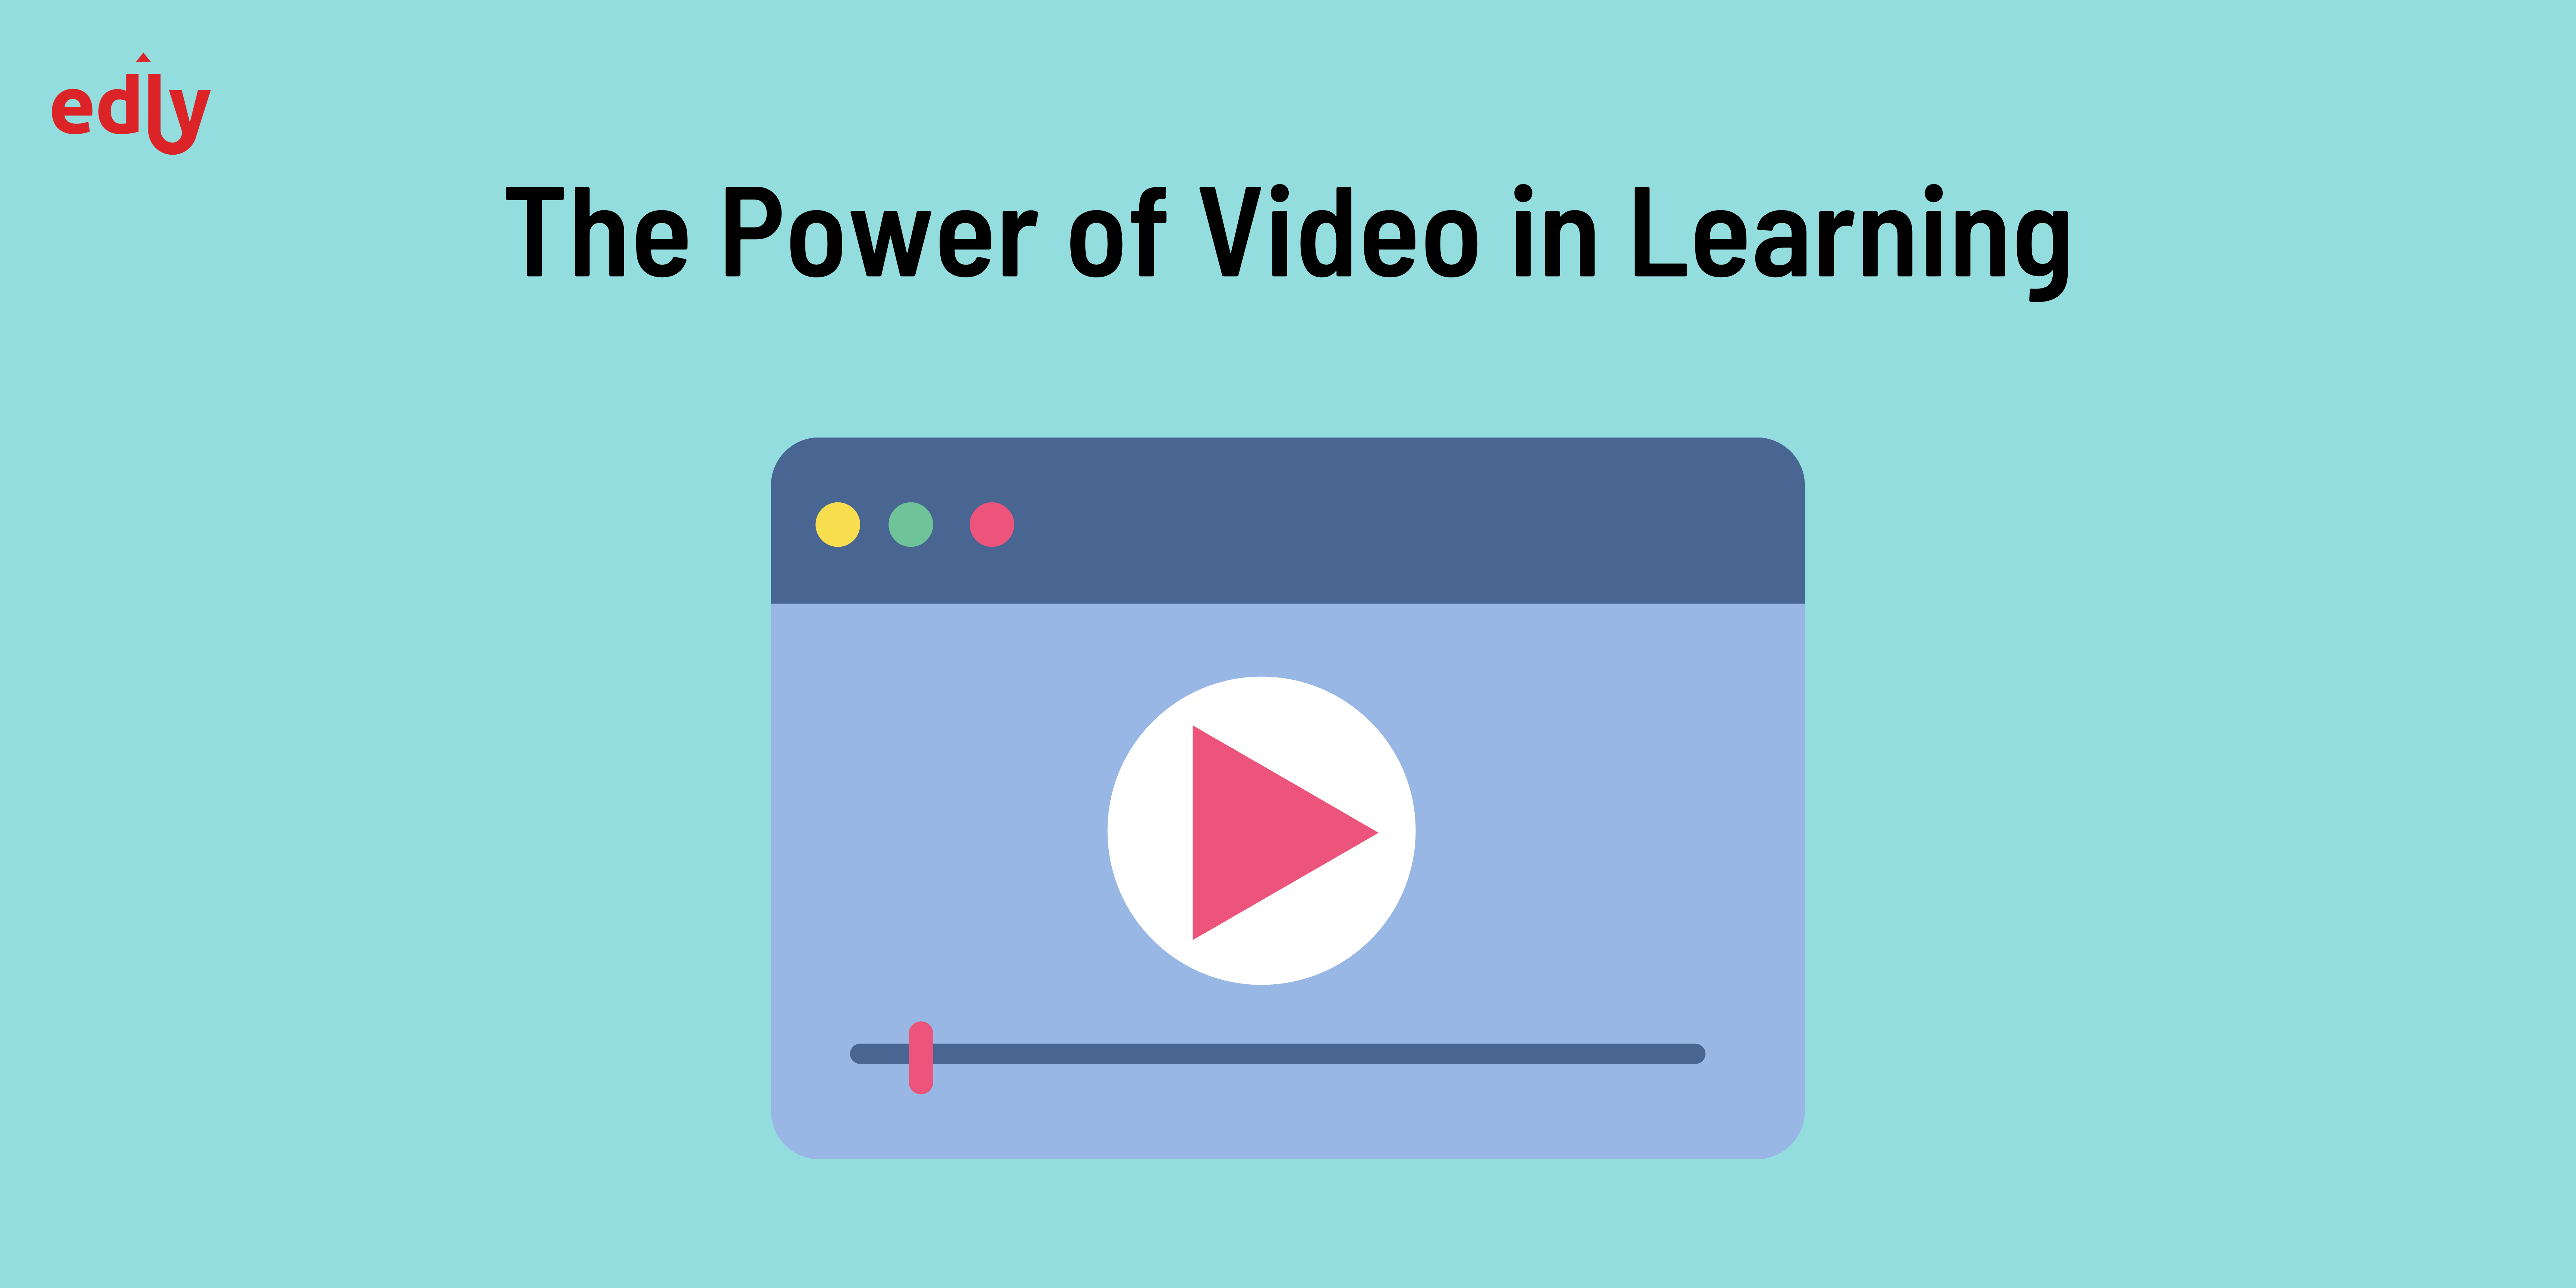 Video learning in K12